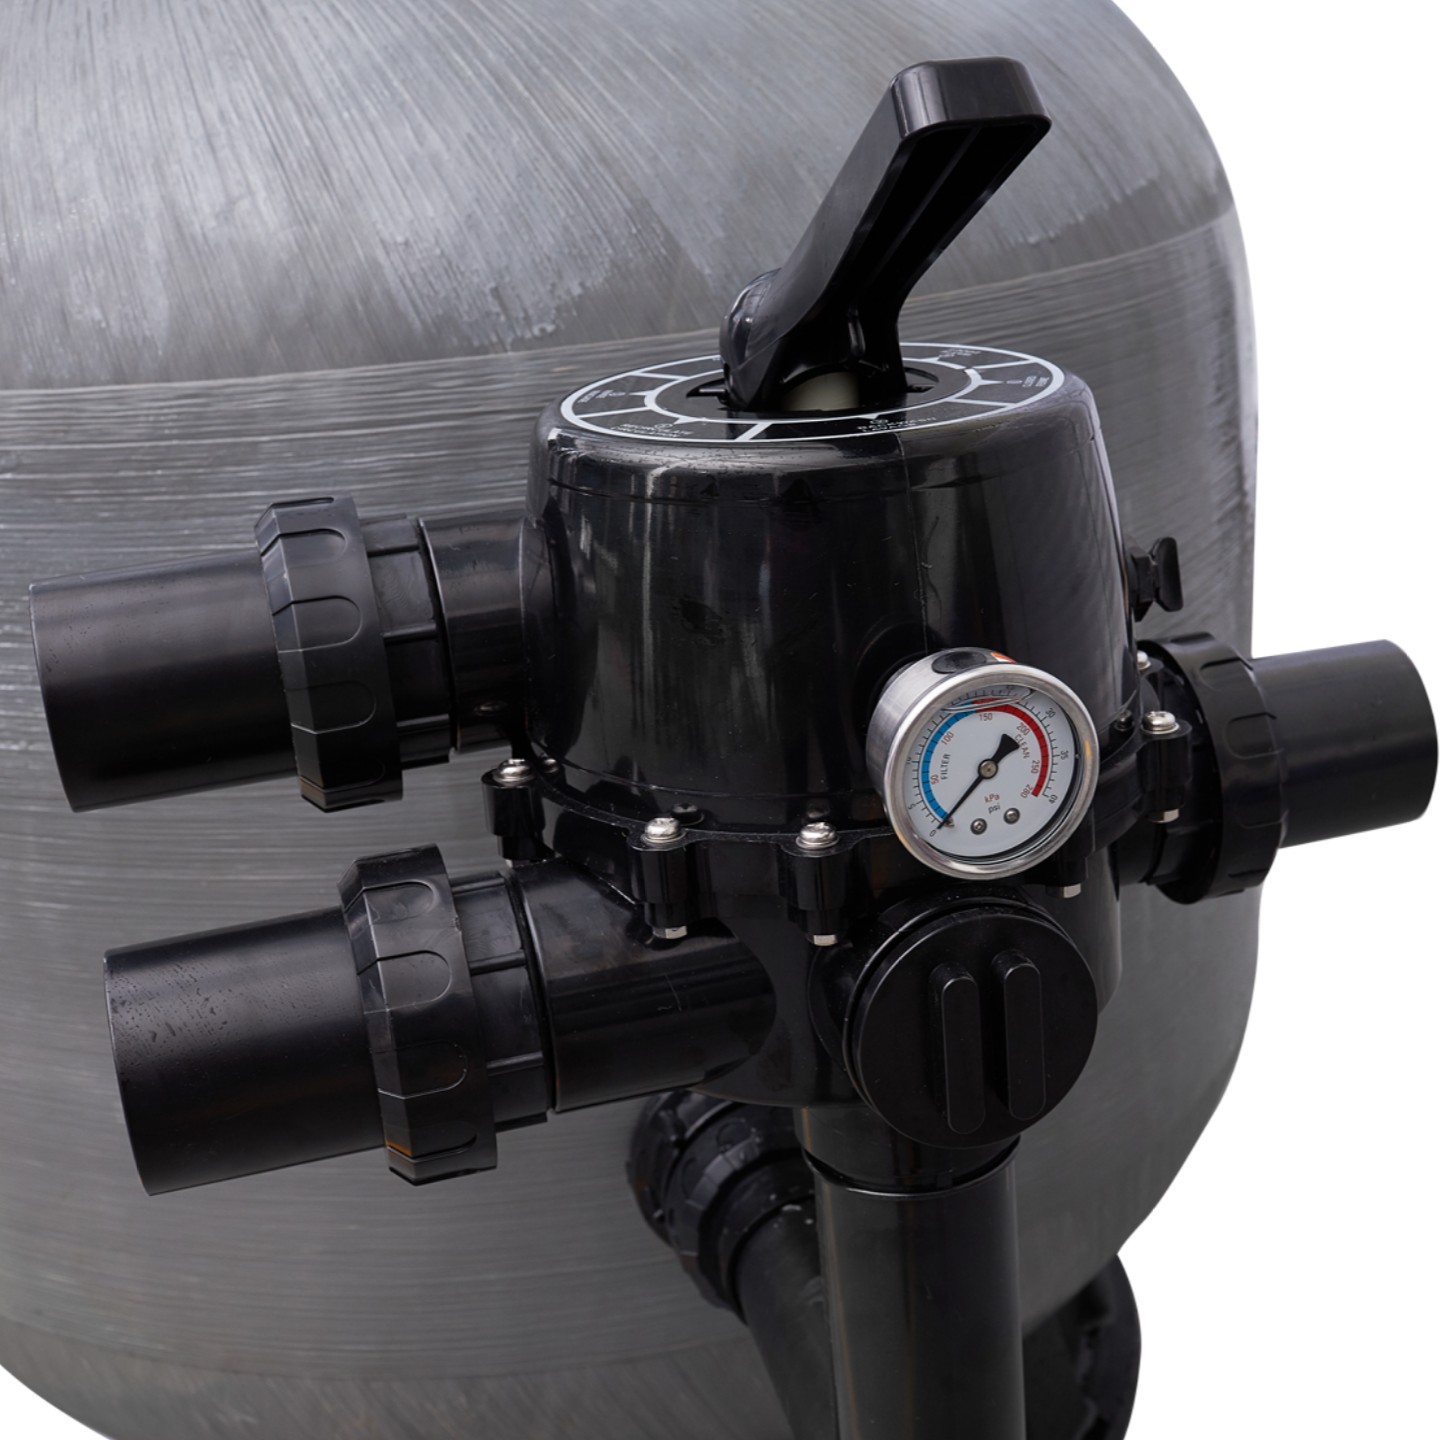 Фильтр AquaViva PS25 (16m3/h, 625mm, 150kg, 1,5" бок)